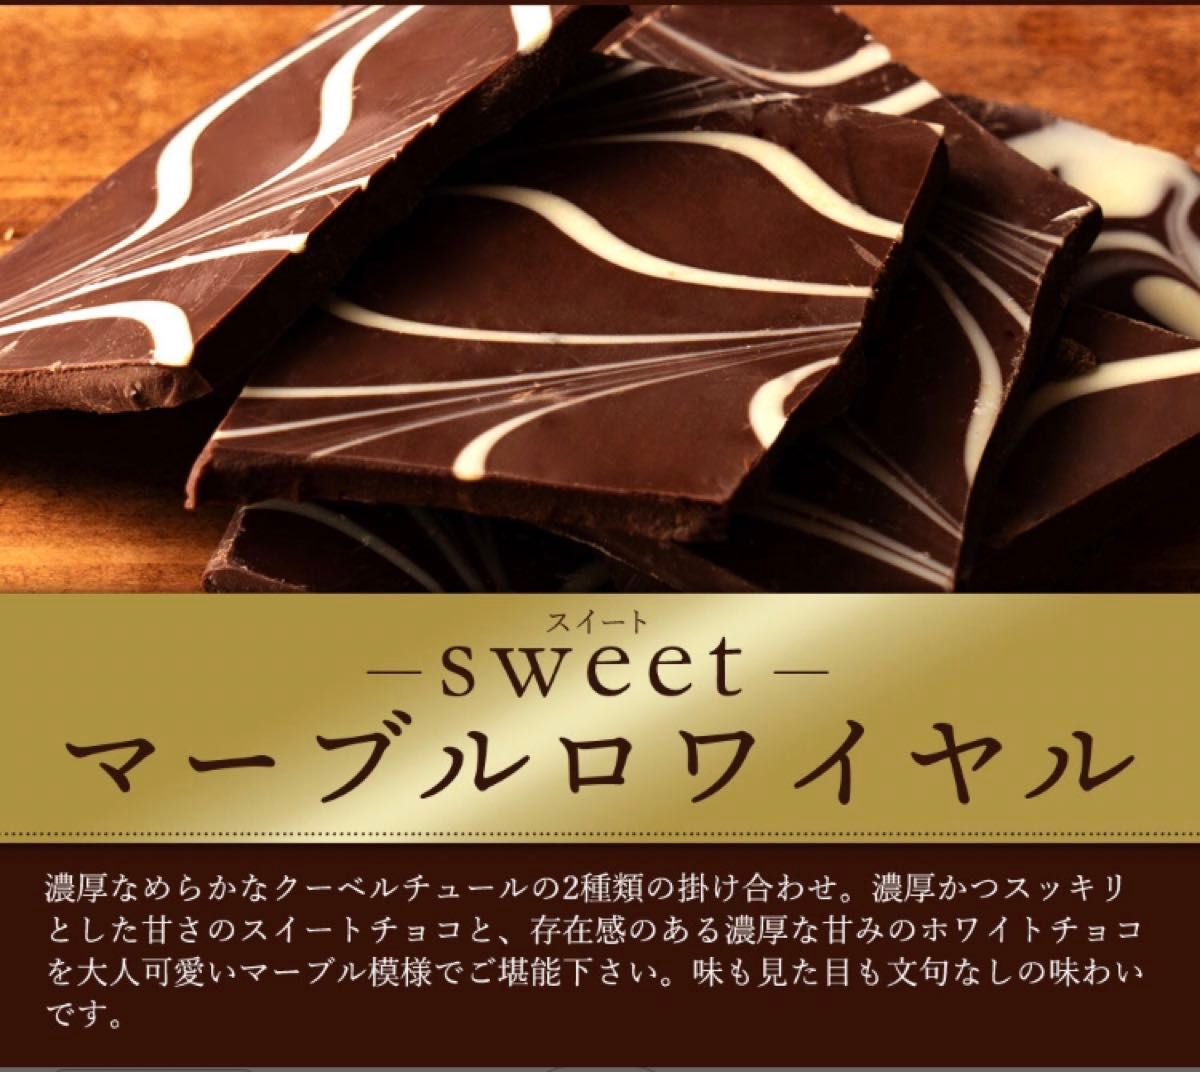 チョコレート チョコ スイーツ 本格クーベルチュール使用 割れチョコ マーブルロワイヤル(スイート) 250g 一袋お試し